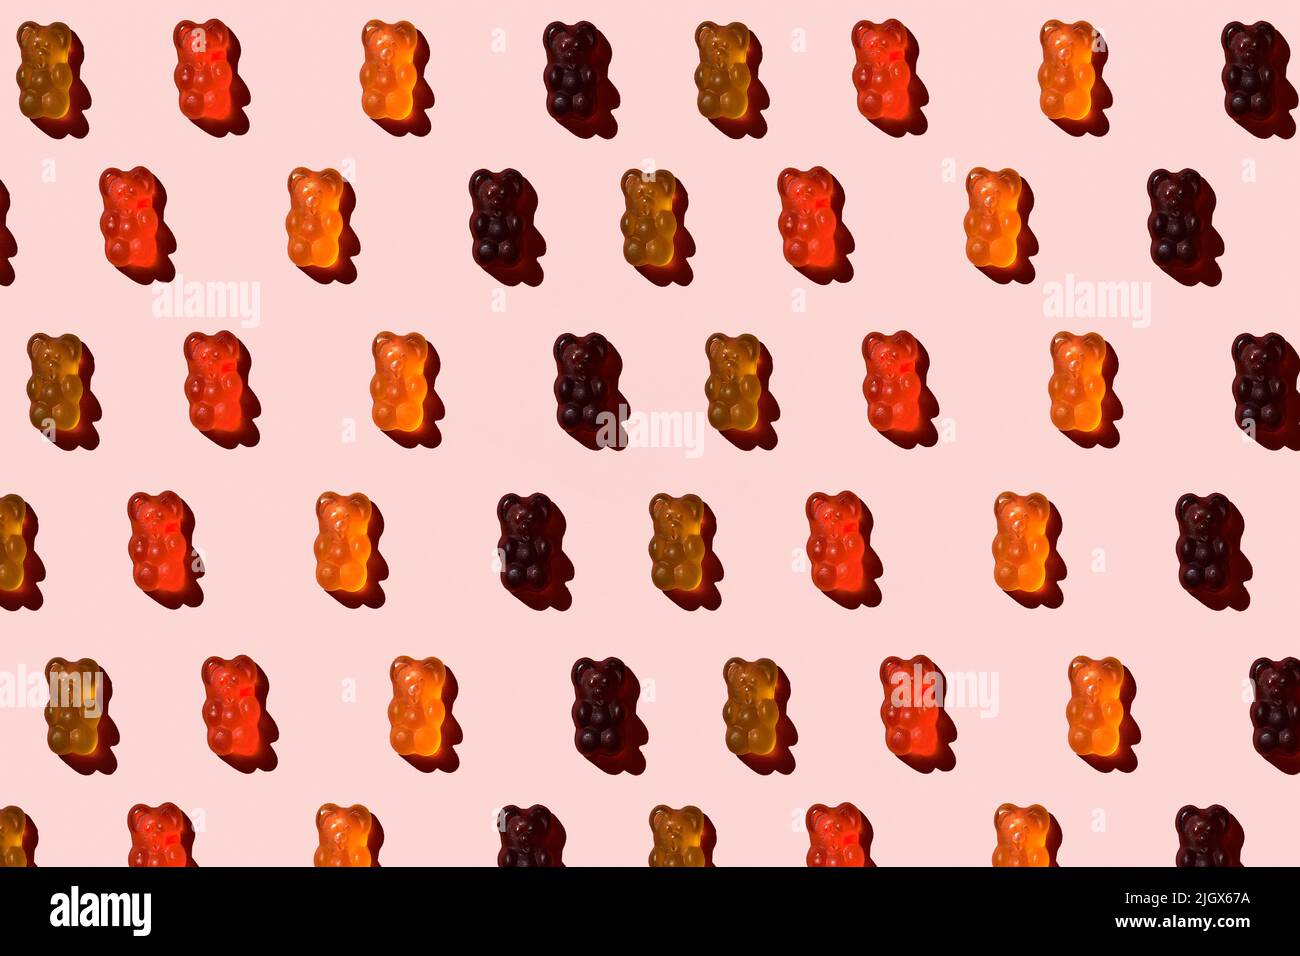 Motif composé d'ours en gelée colorés sur fond rose. Pose à plat. Concept minimal Banque D'Images